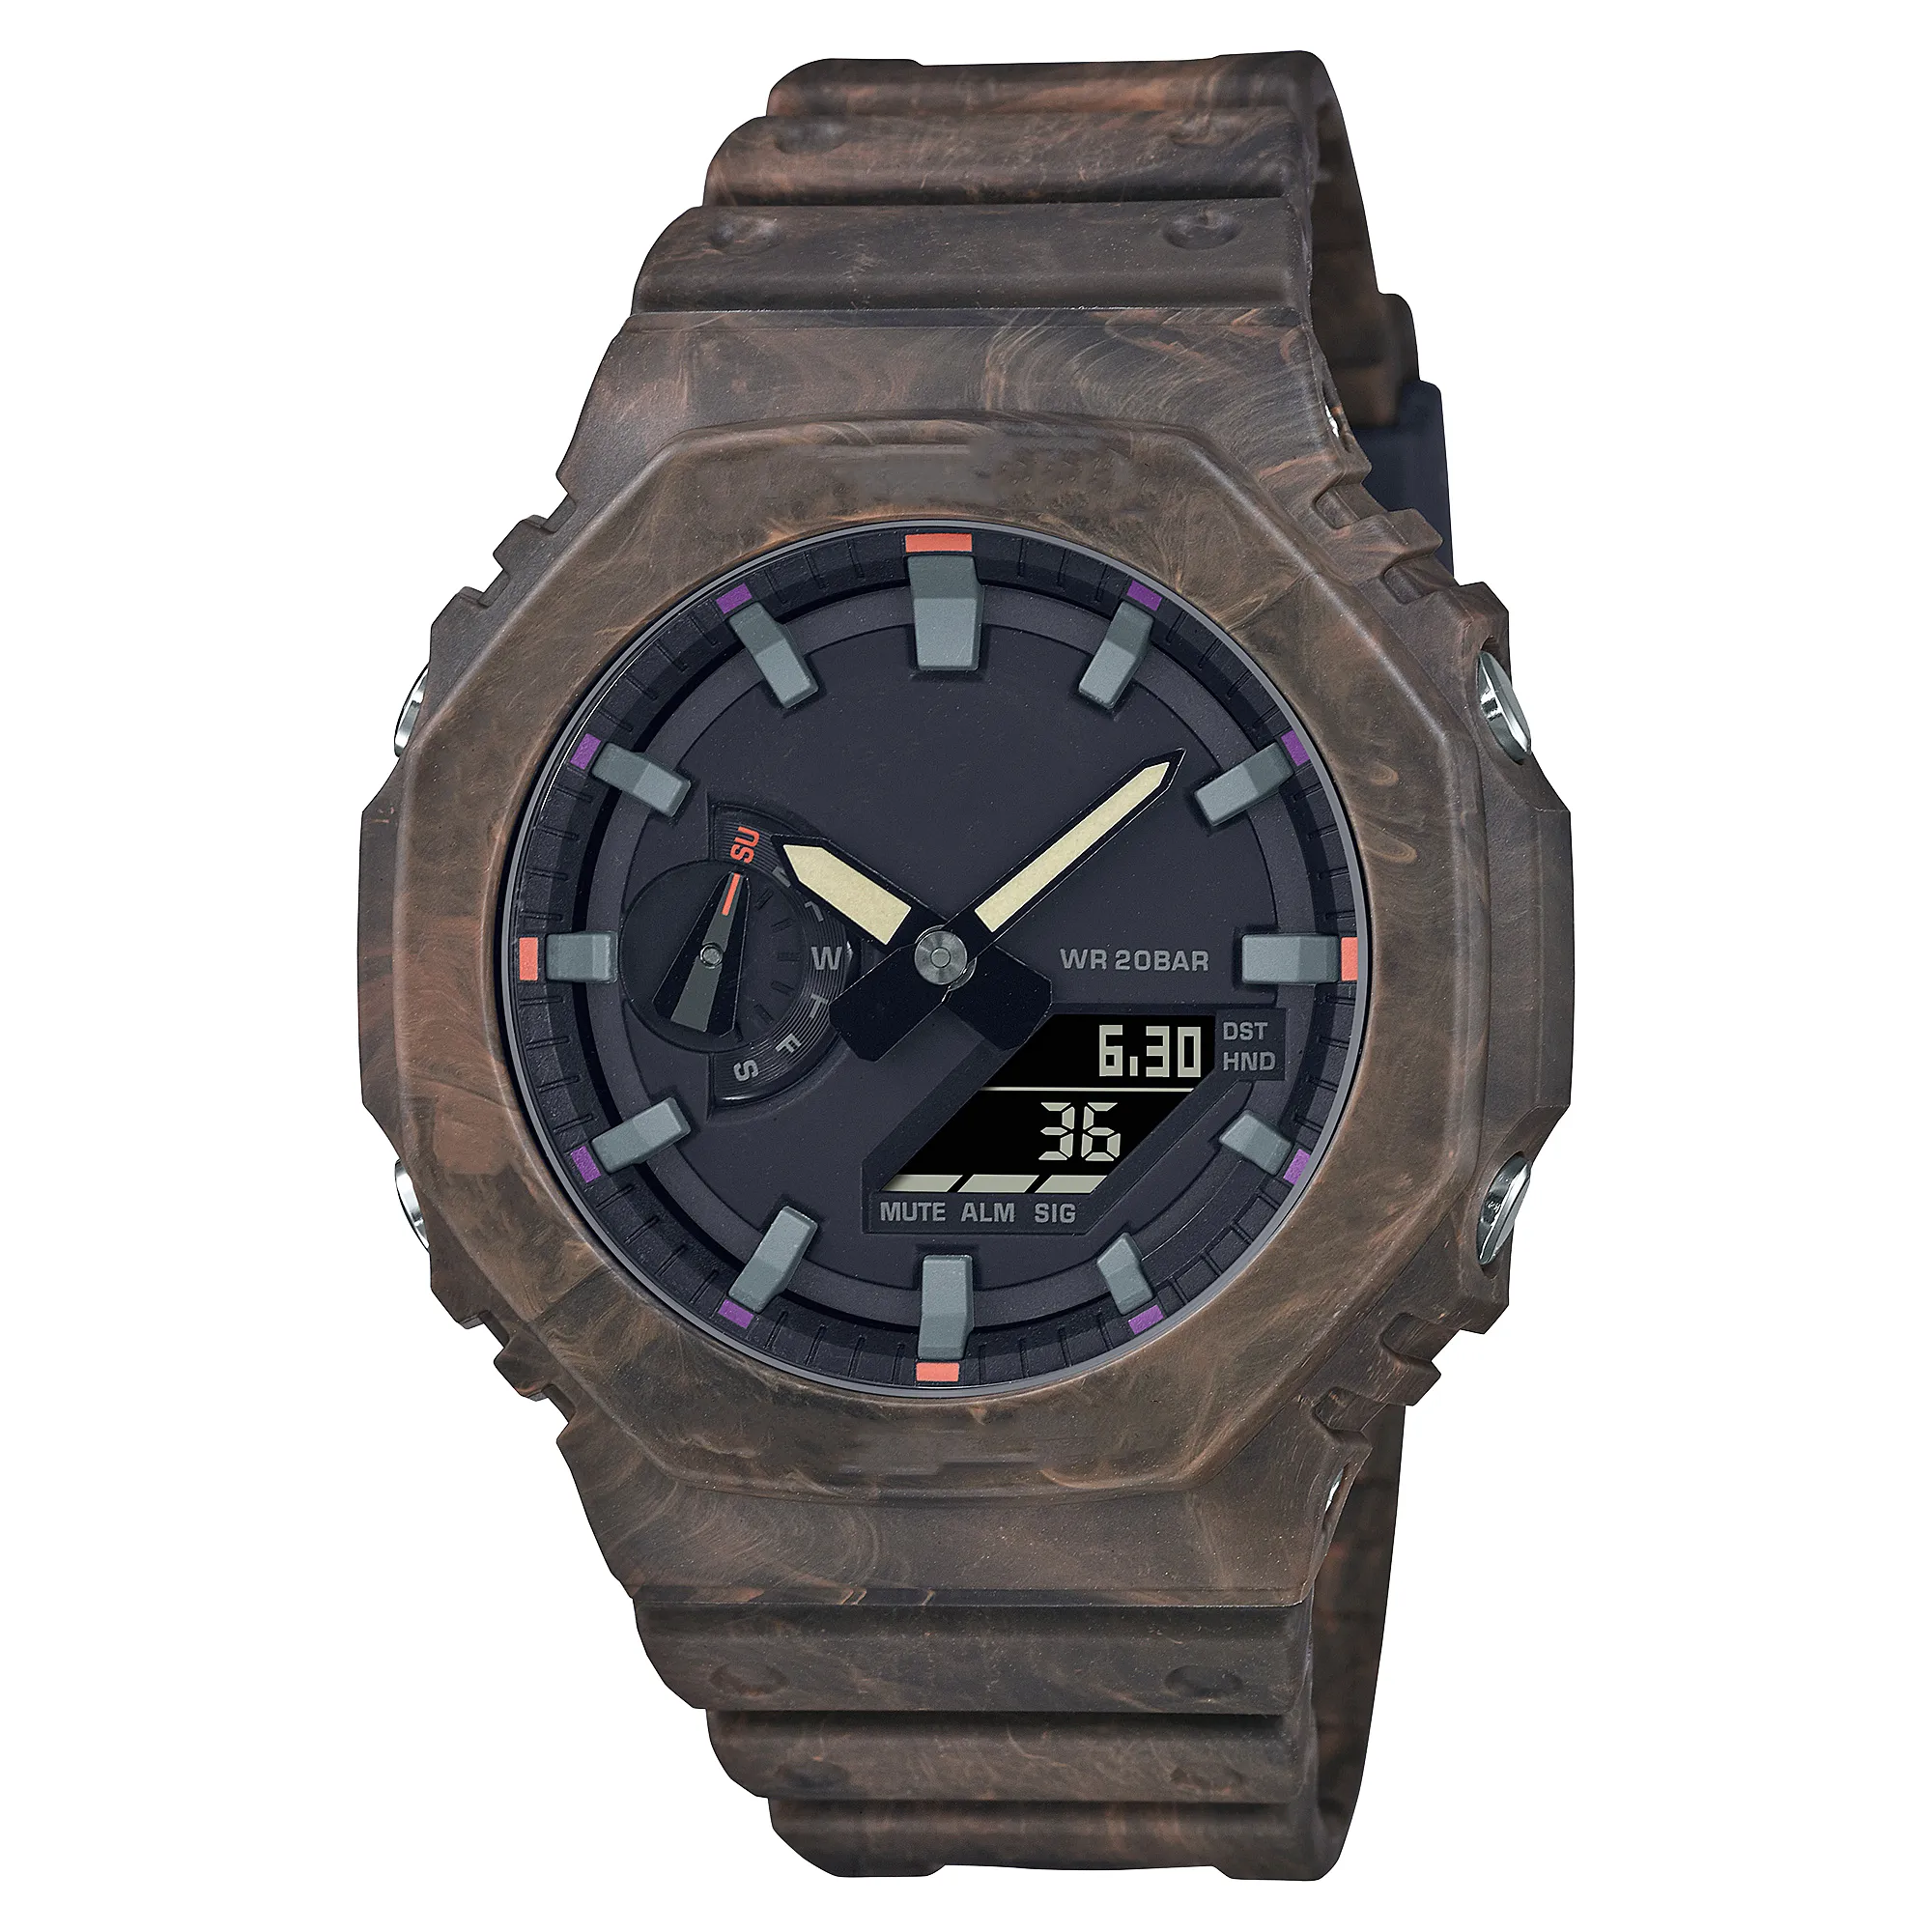 Relógio masculino esportivo marrom digital quartzo 2100, hora mundial, completo, à prova d'água, LED, mostrador grande, série Oak